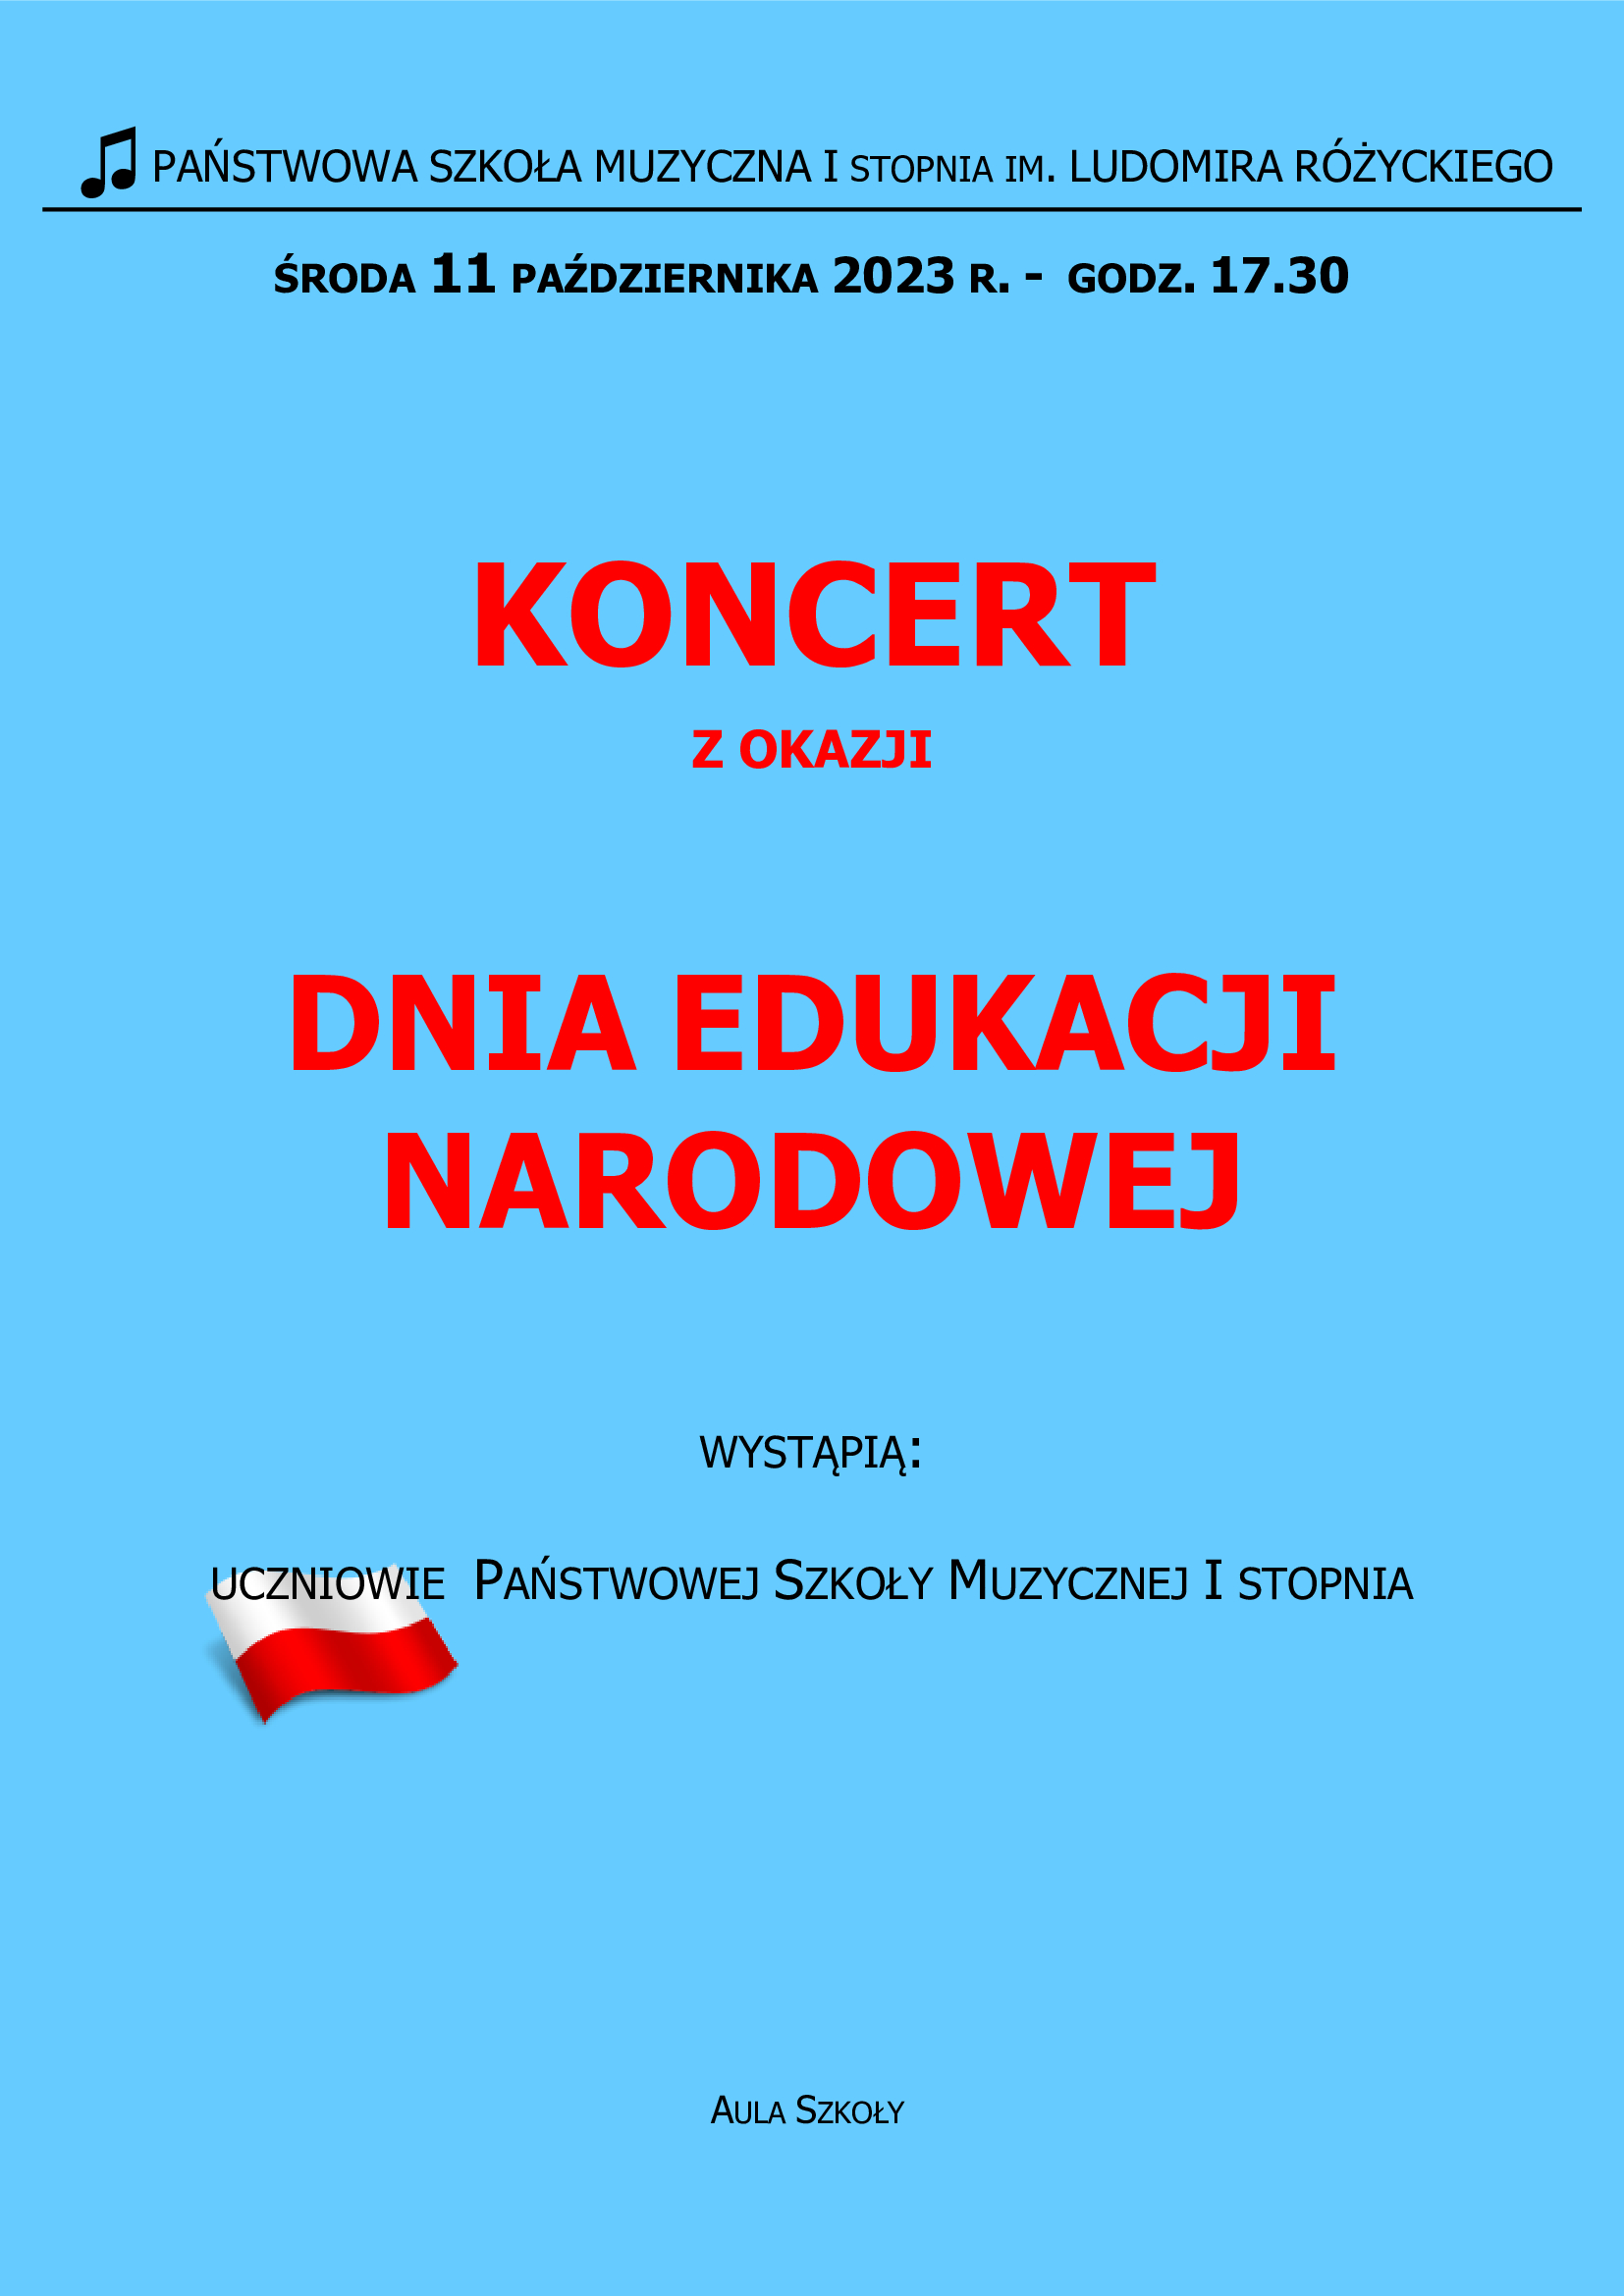 Plakat informujący o koncercie z okazji Dnia Edukacji Narodowej. Czerwone napisy na niebieskim tle.